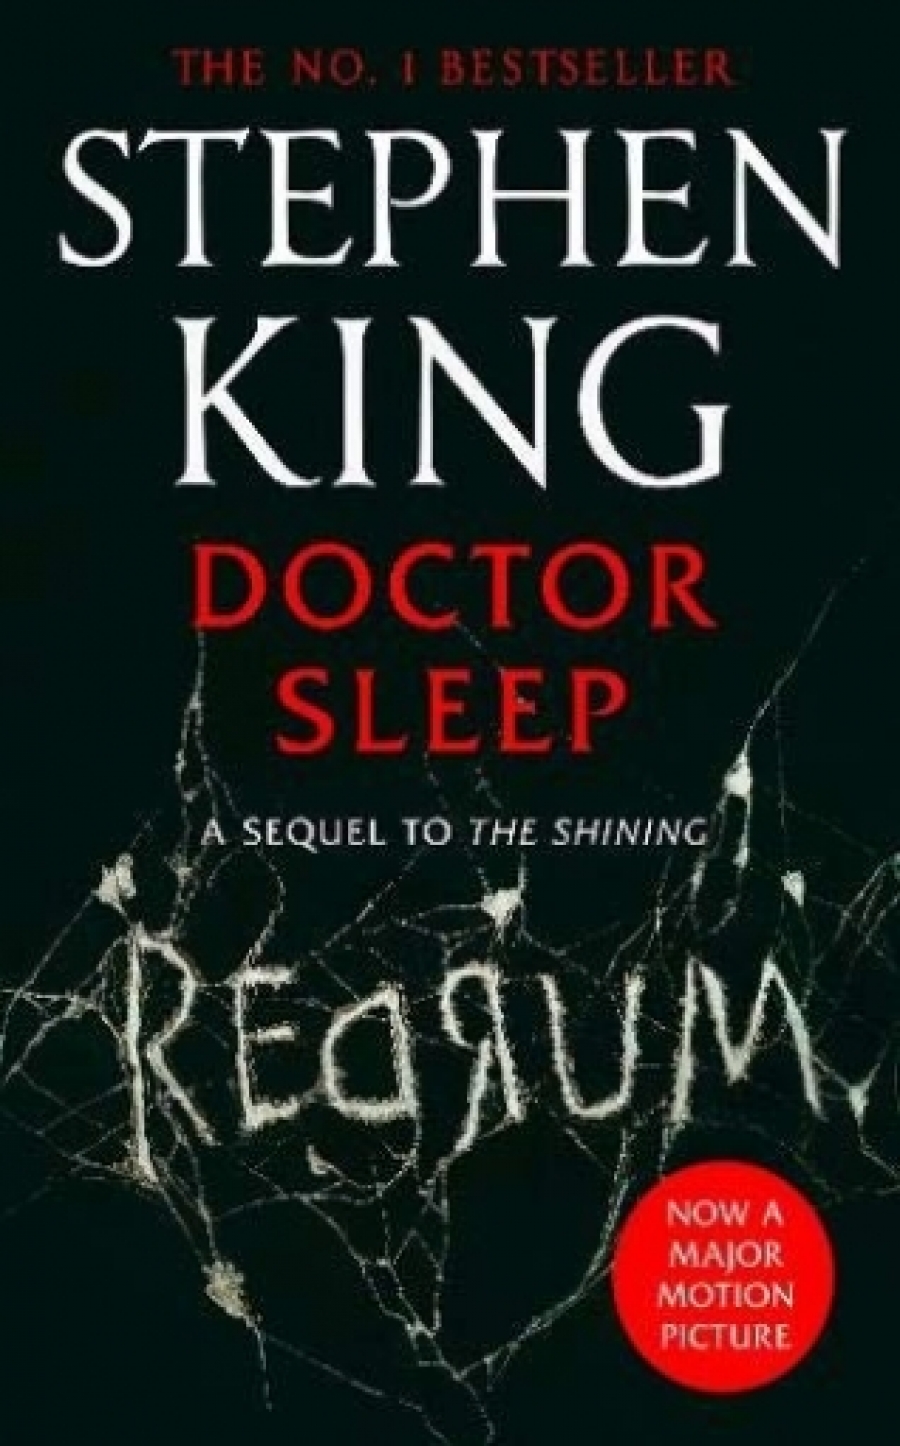 King Stephen Doctor Sleep: Film Tie-In 